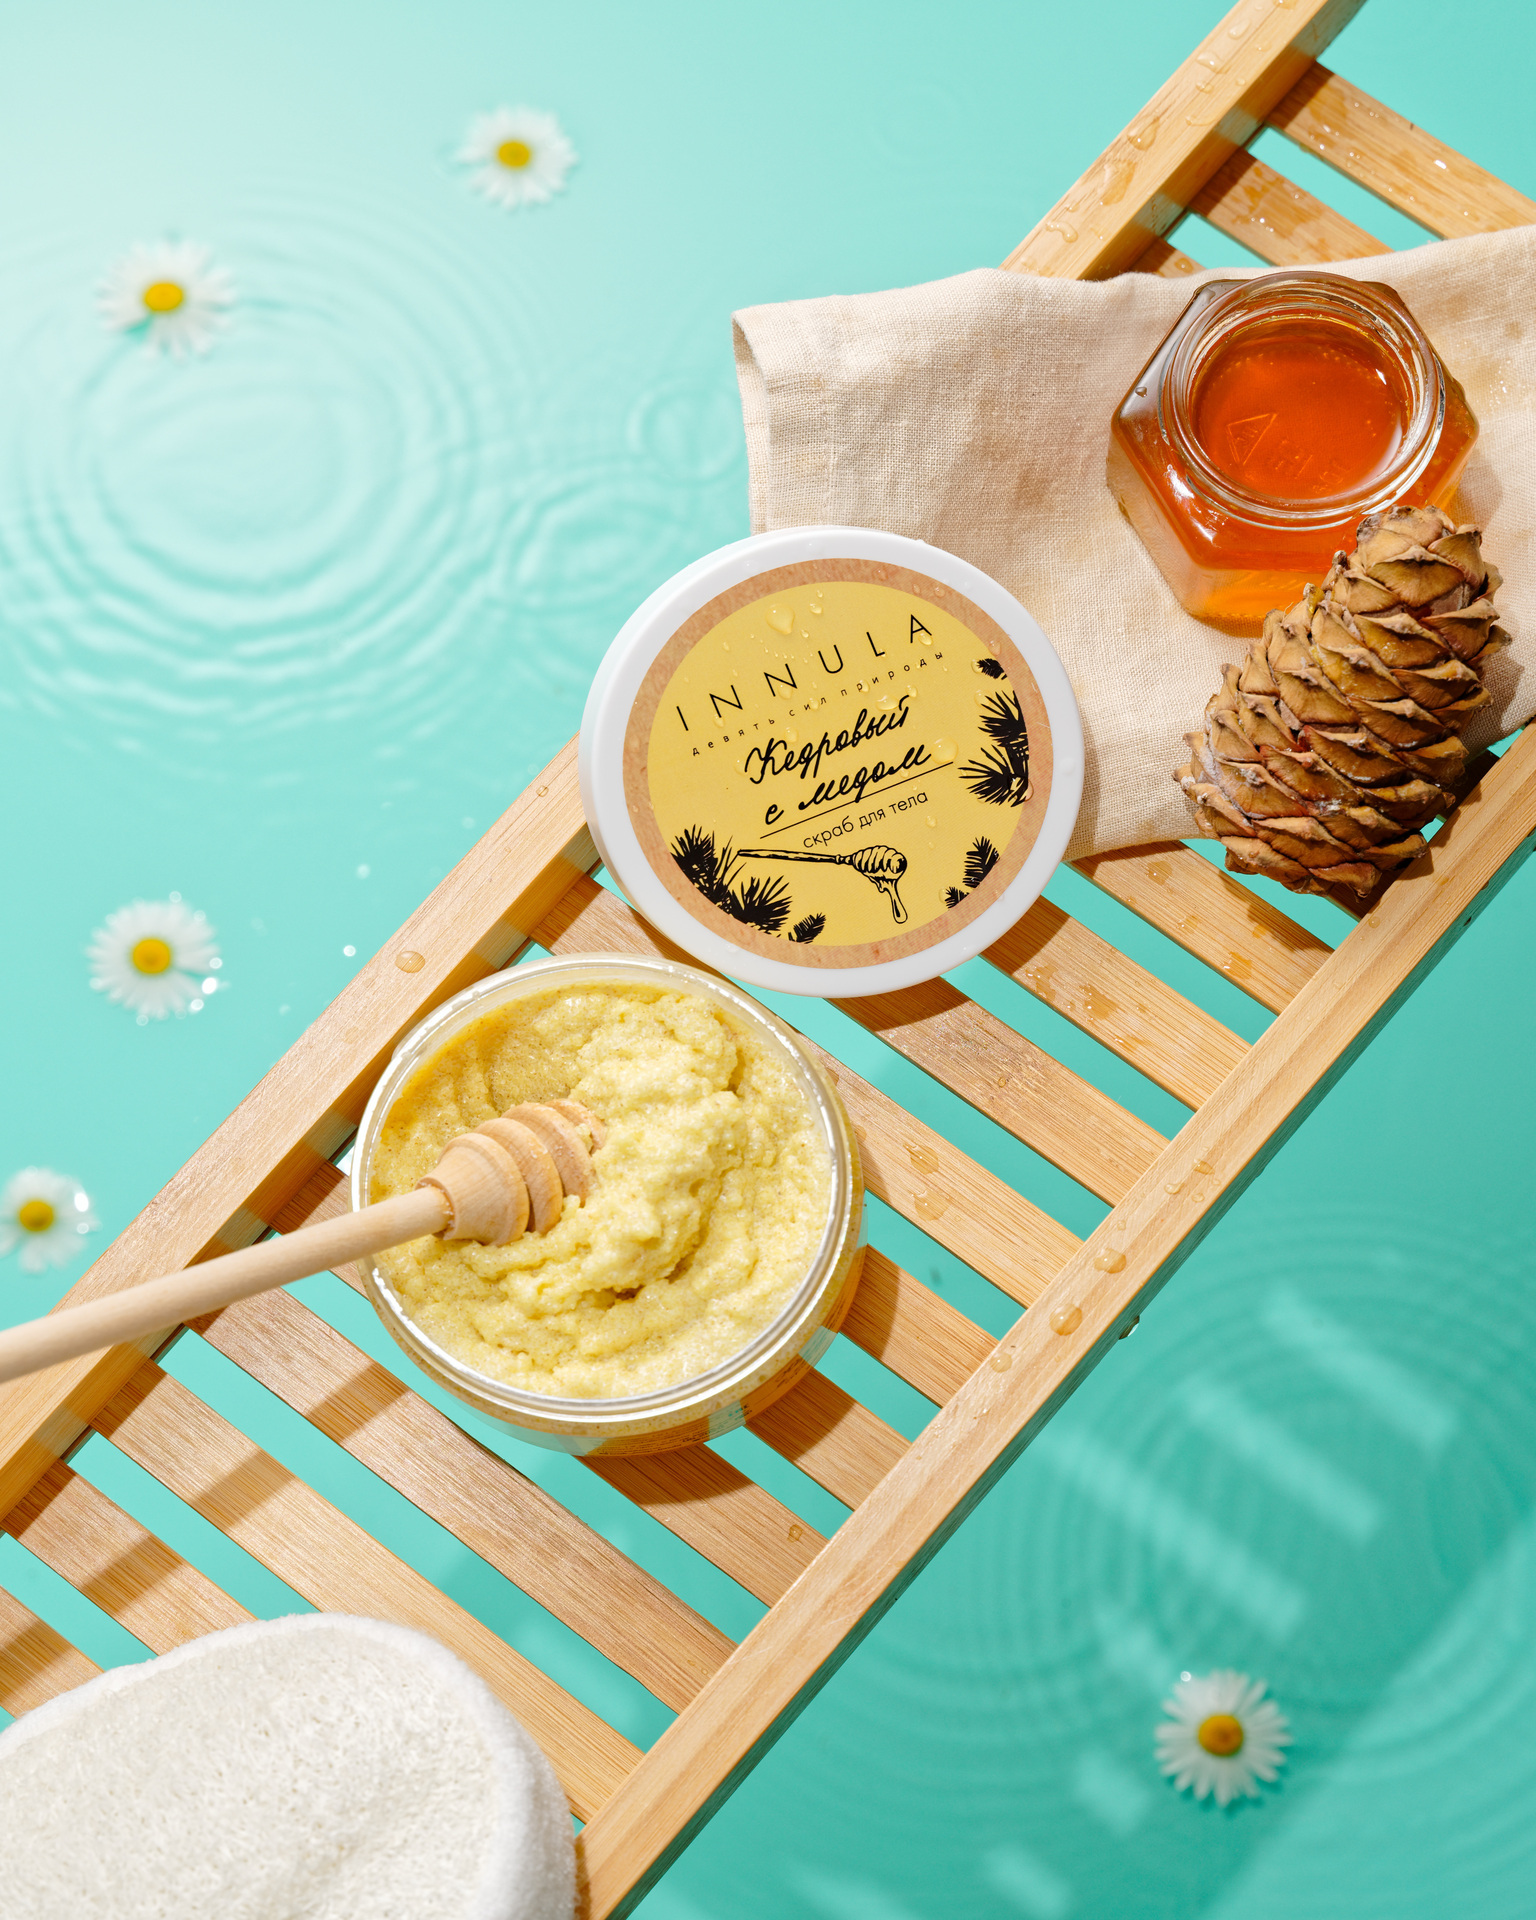 Как правильно использовать мед в бане? Домашние скрабы с медом.